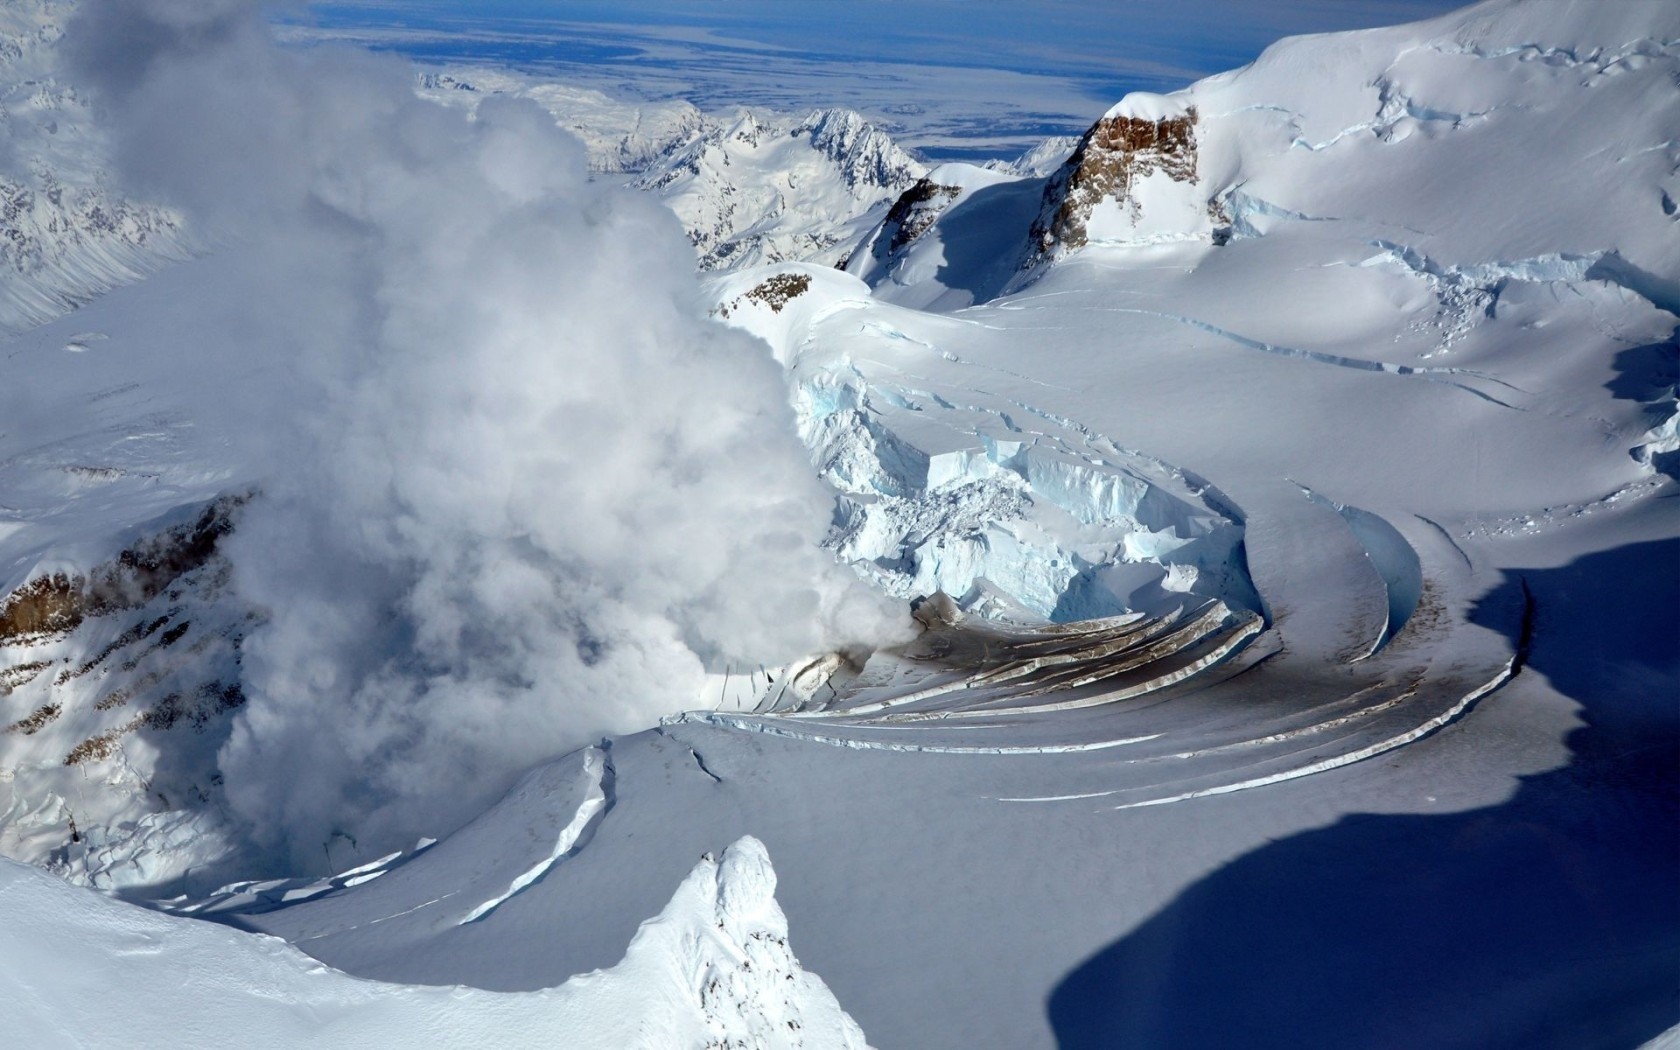 General 1680x1050 landscape Alaska snow vaporwave volcano eruption